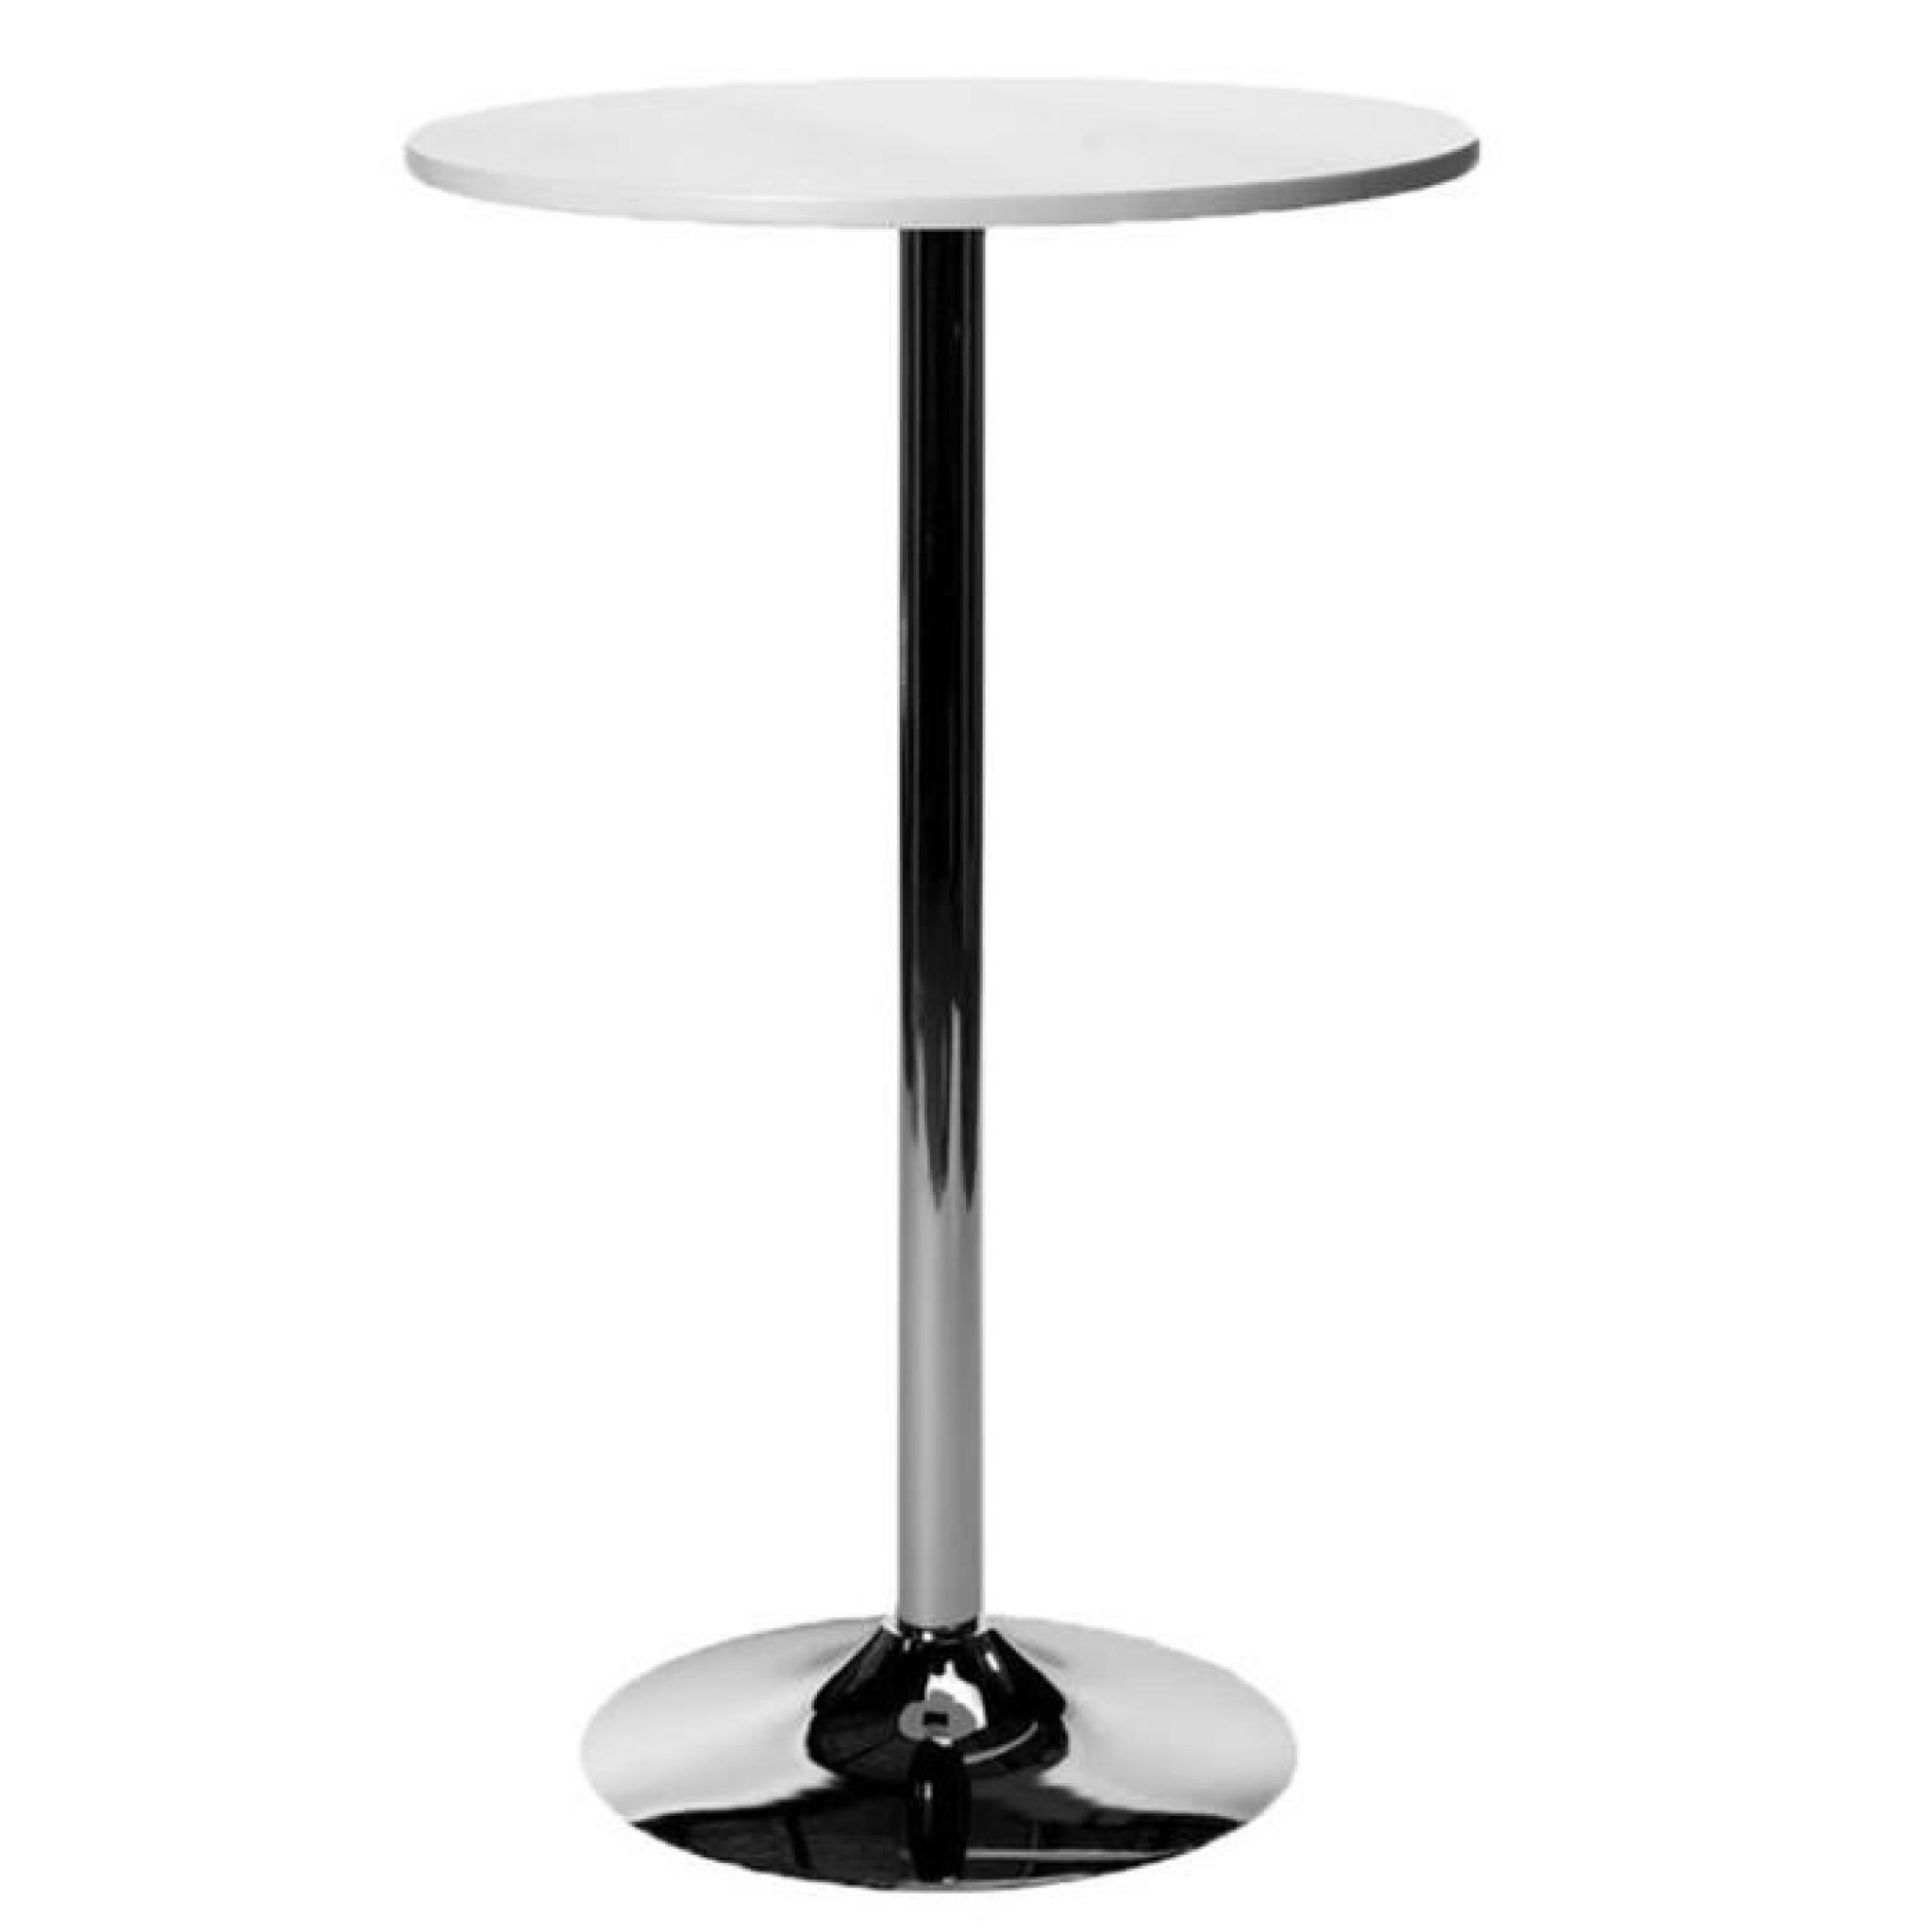 Table de bar en métal avec plateau en bois de couleur noire - Dim : H 105 cm